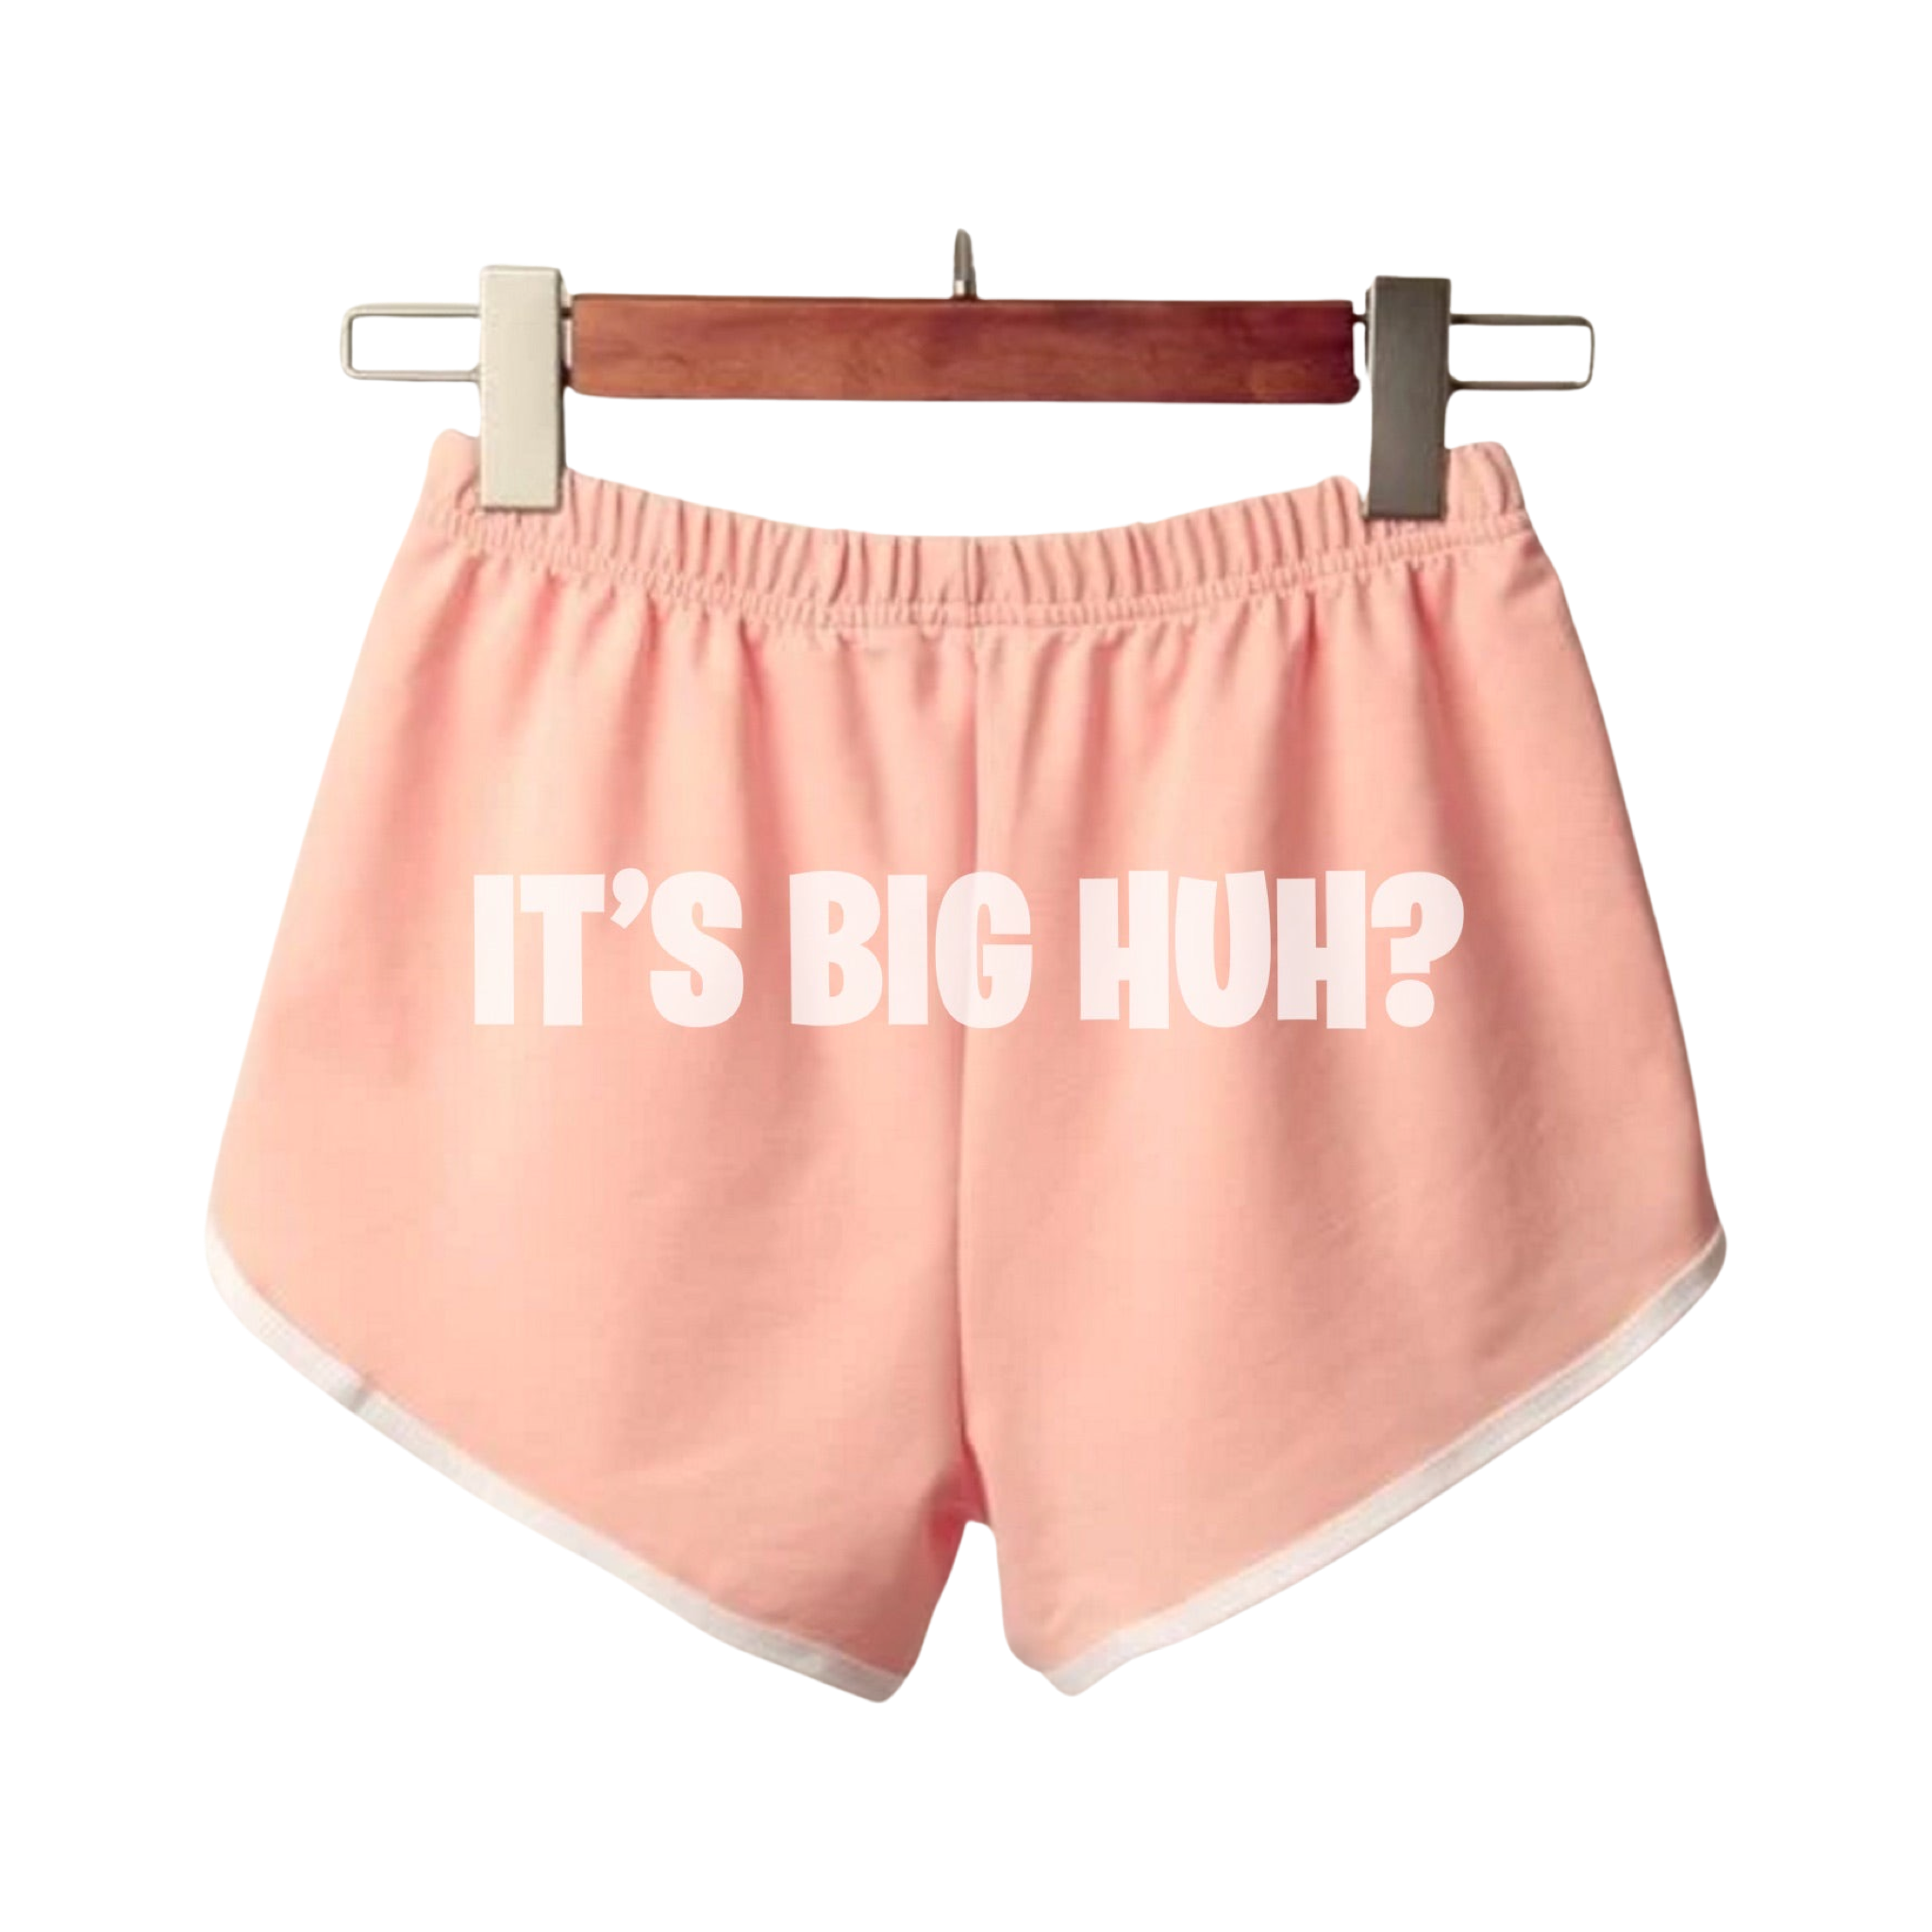 It's Big HUH shorts Pink – Landon Romano